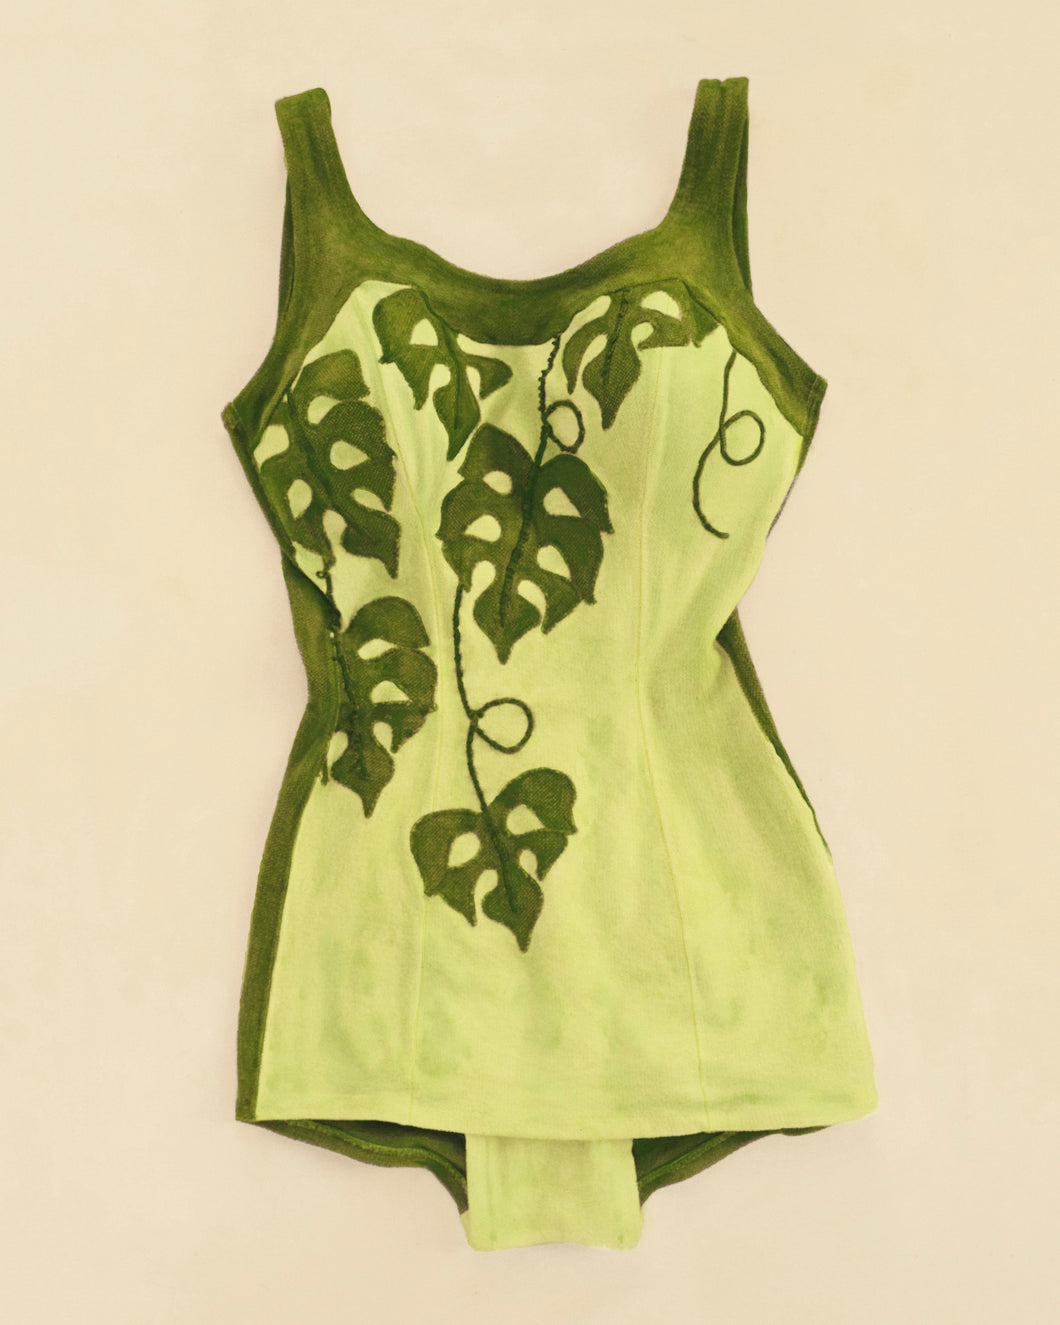 Taro Vine Catalina Swim Suit Artwork